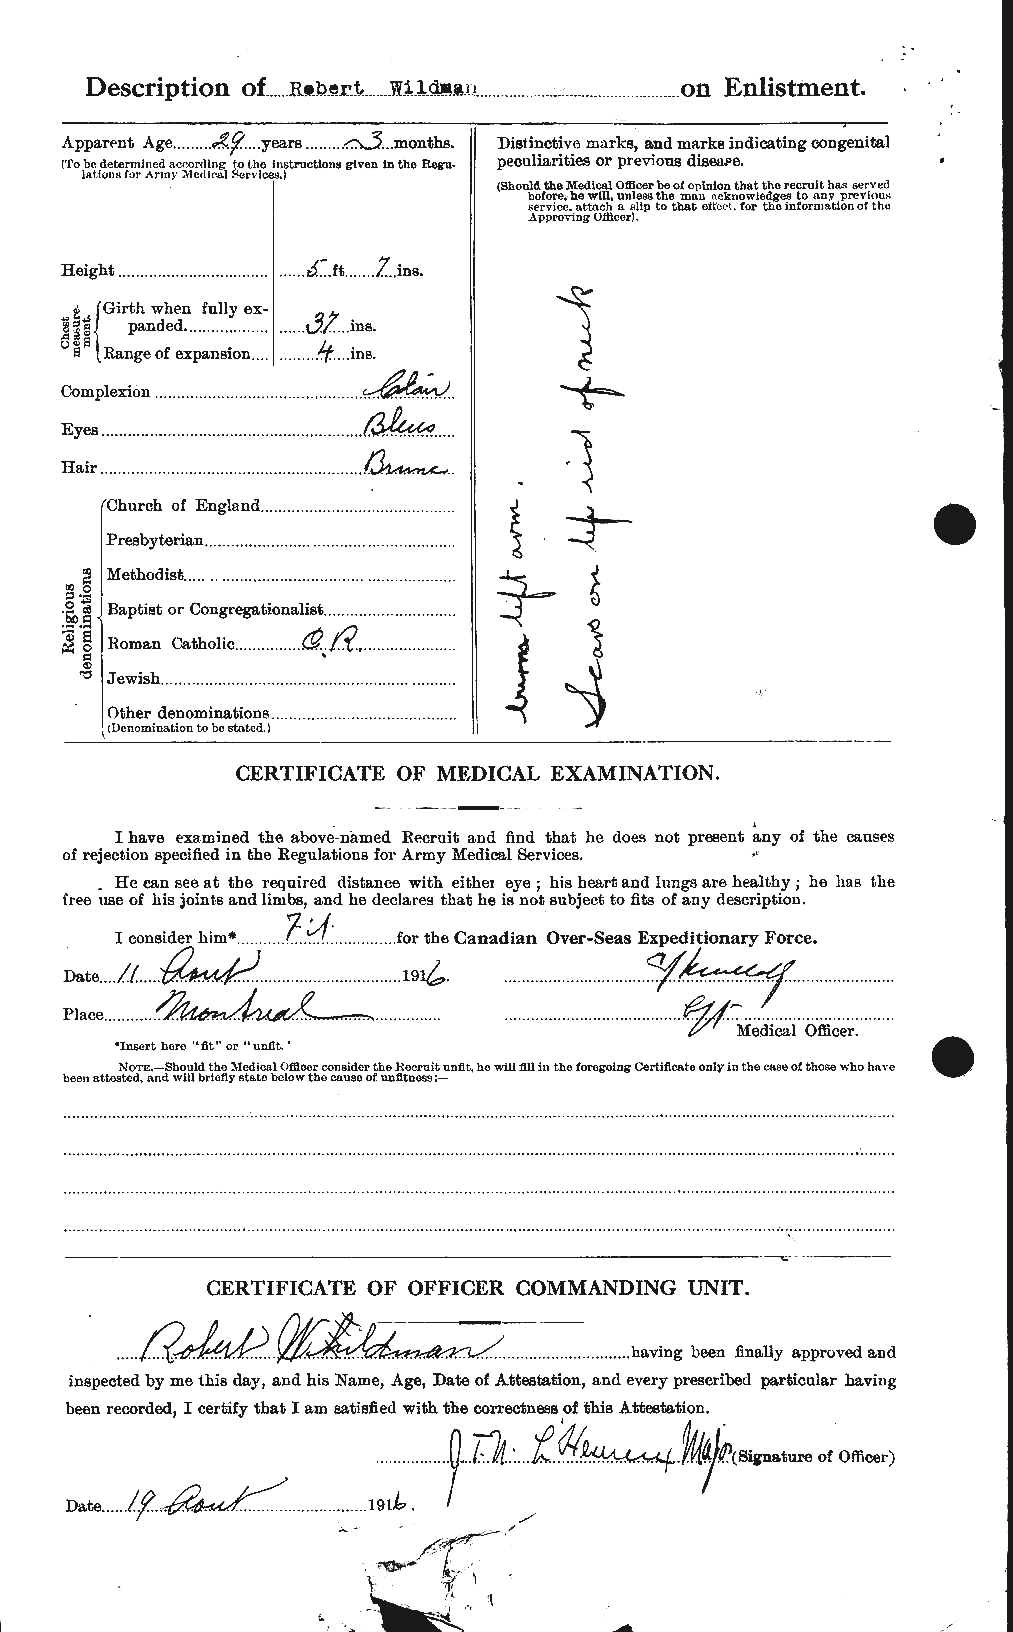 Dossiers du Personnel de la Première Guerre mondiale - CEC 680136b